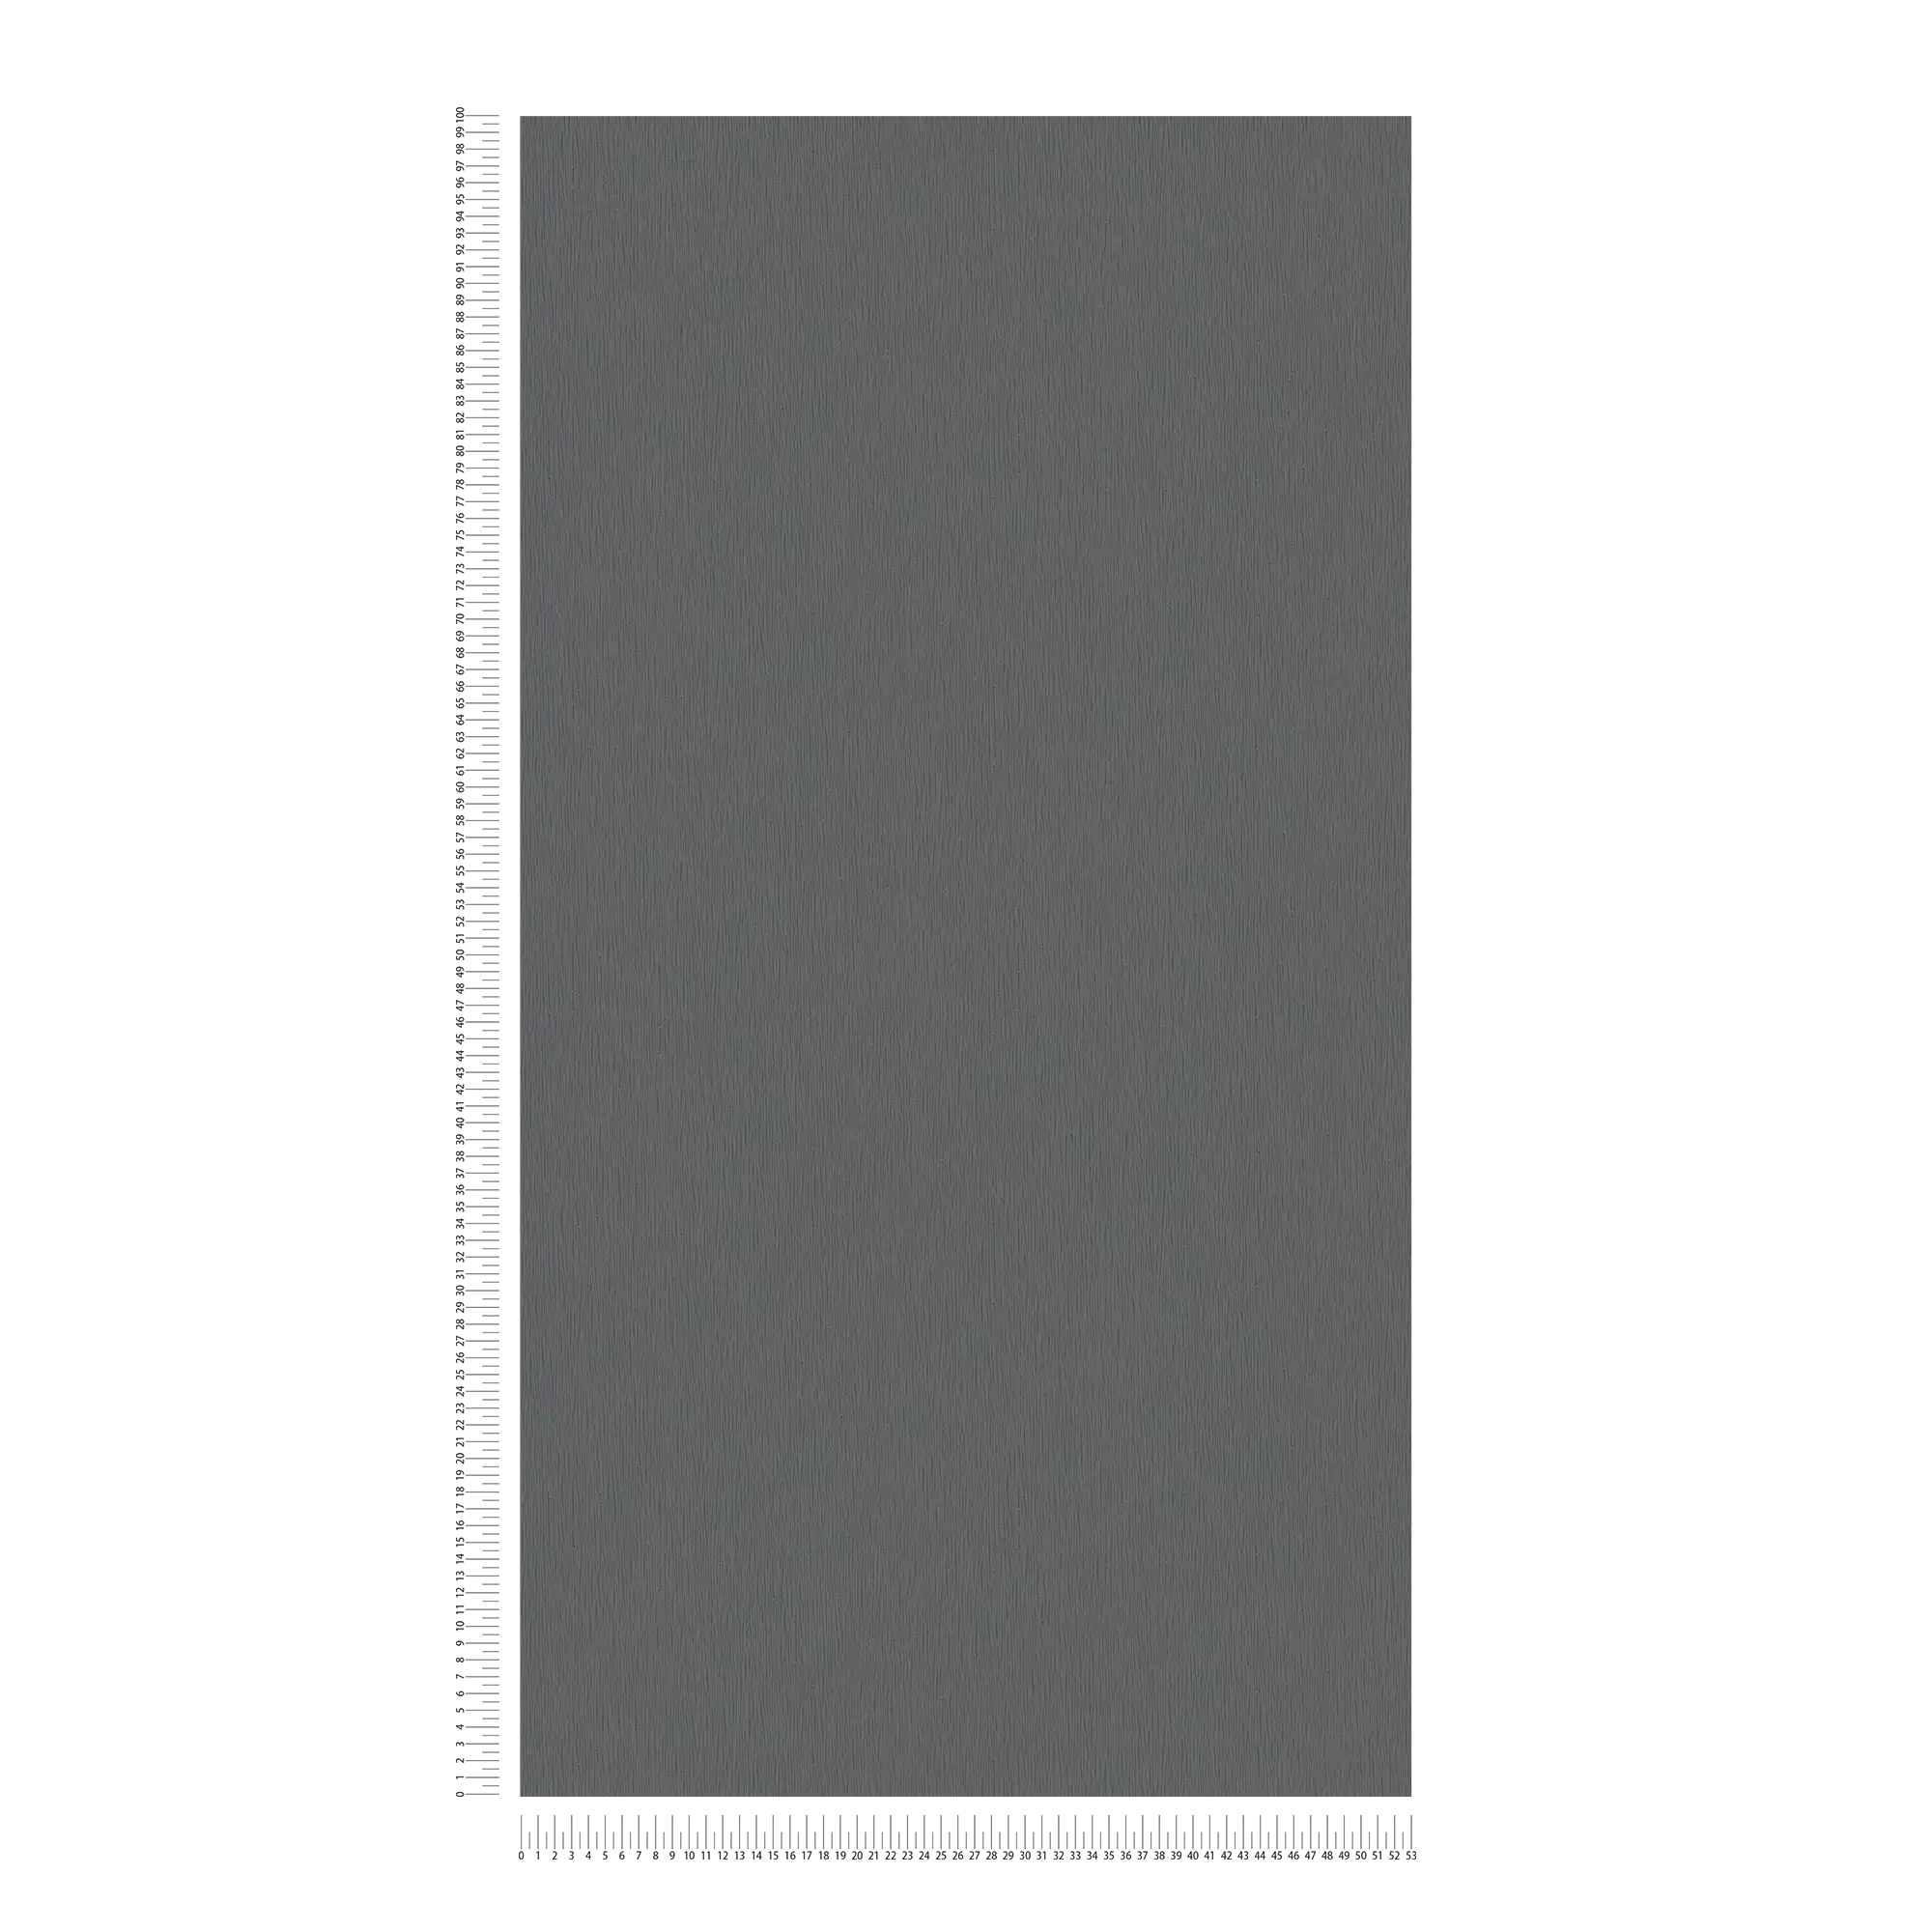             Carta da parati in tessuto non tessuto antracite con motivo naturale tono su tono - metallizzato, nero
        